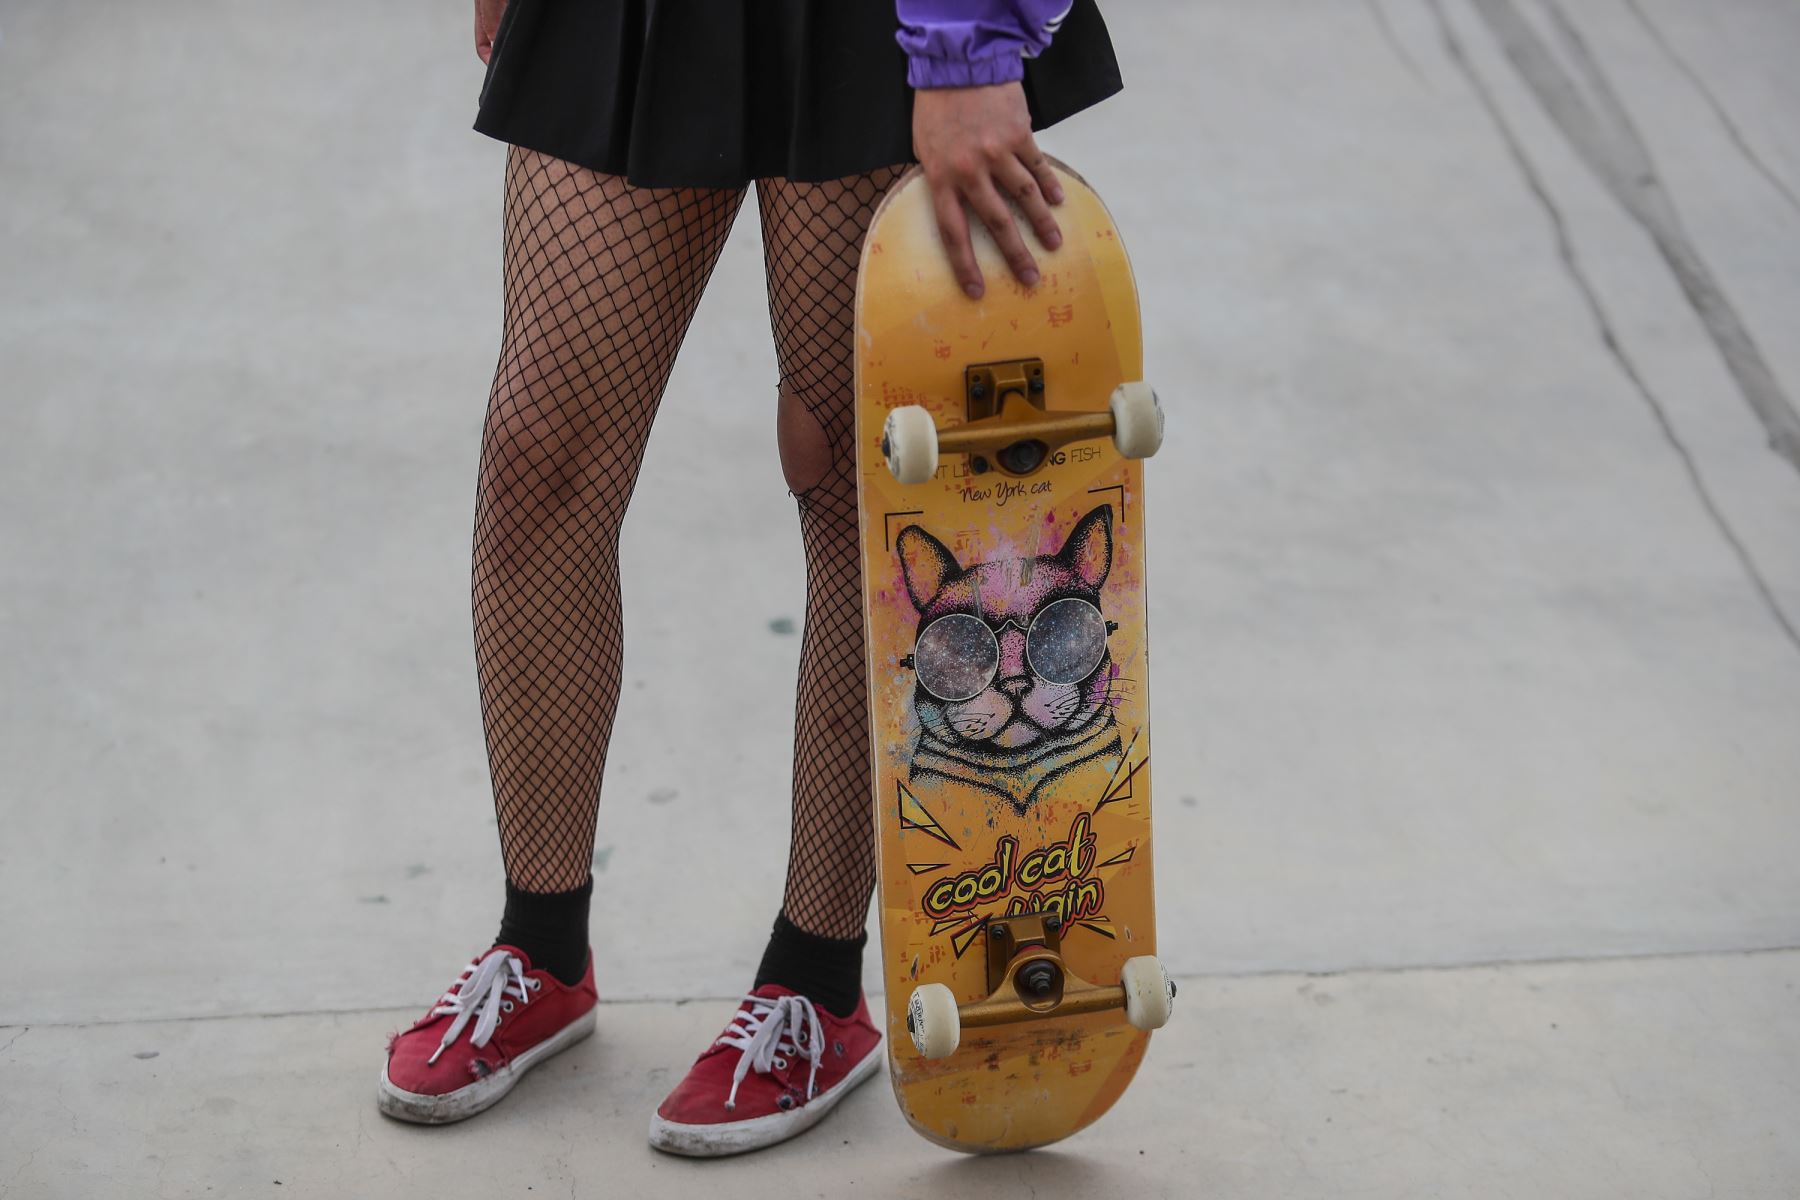 Una integrante del colectivo se alista para iniciar sus prácticas de skateboarding. Foto: ANDINA/Renato Pajuelo